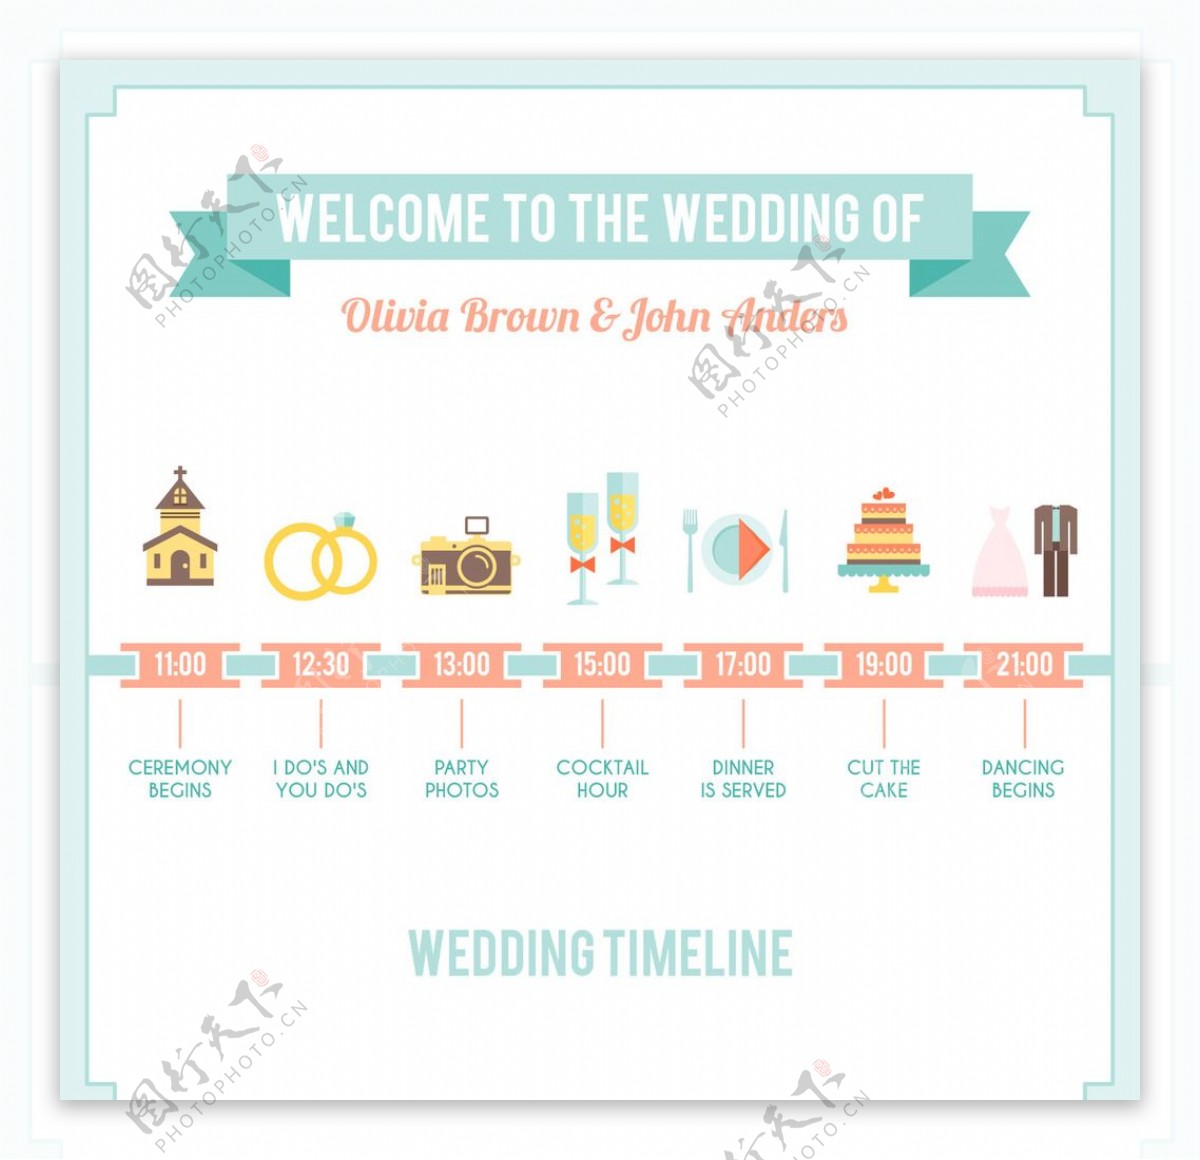 可爱的婚礼信息图表